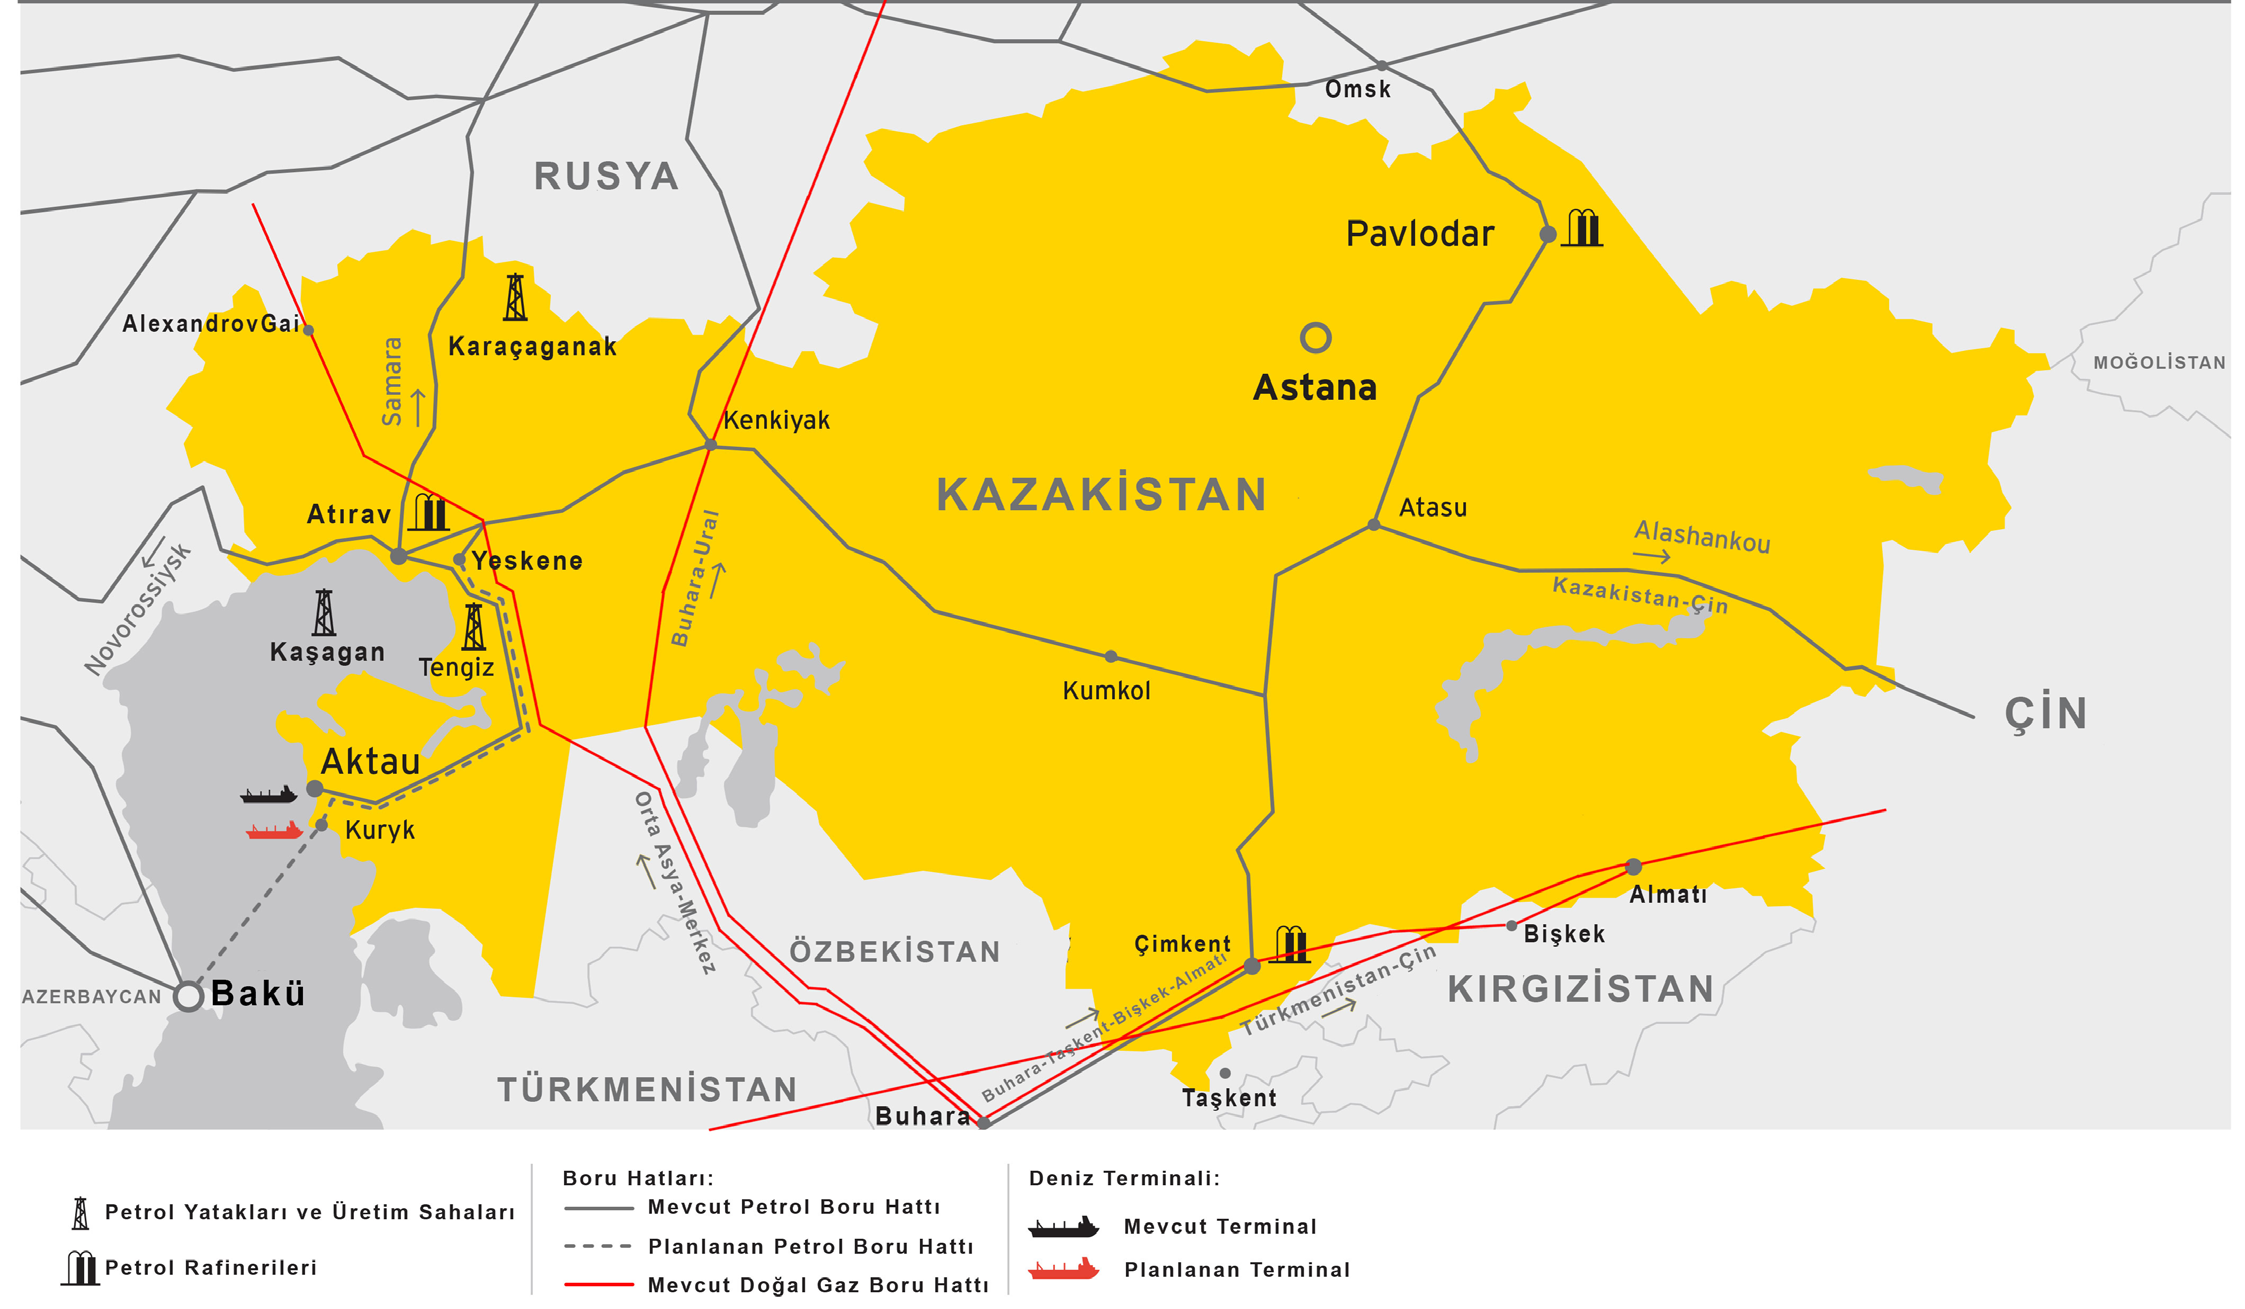 1997 de dahil olmuştur. CNPC, Kazakistan ın Aktyubinsk Petrol Şirketi nin hisselerinin %60 ını 4,3 milyar dolar karşılığında almıştır.